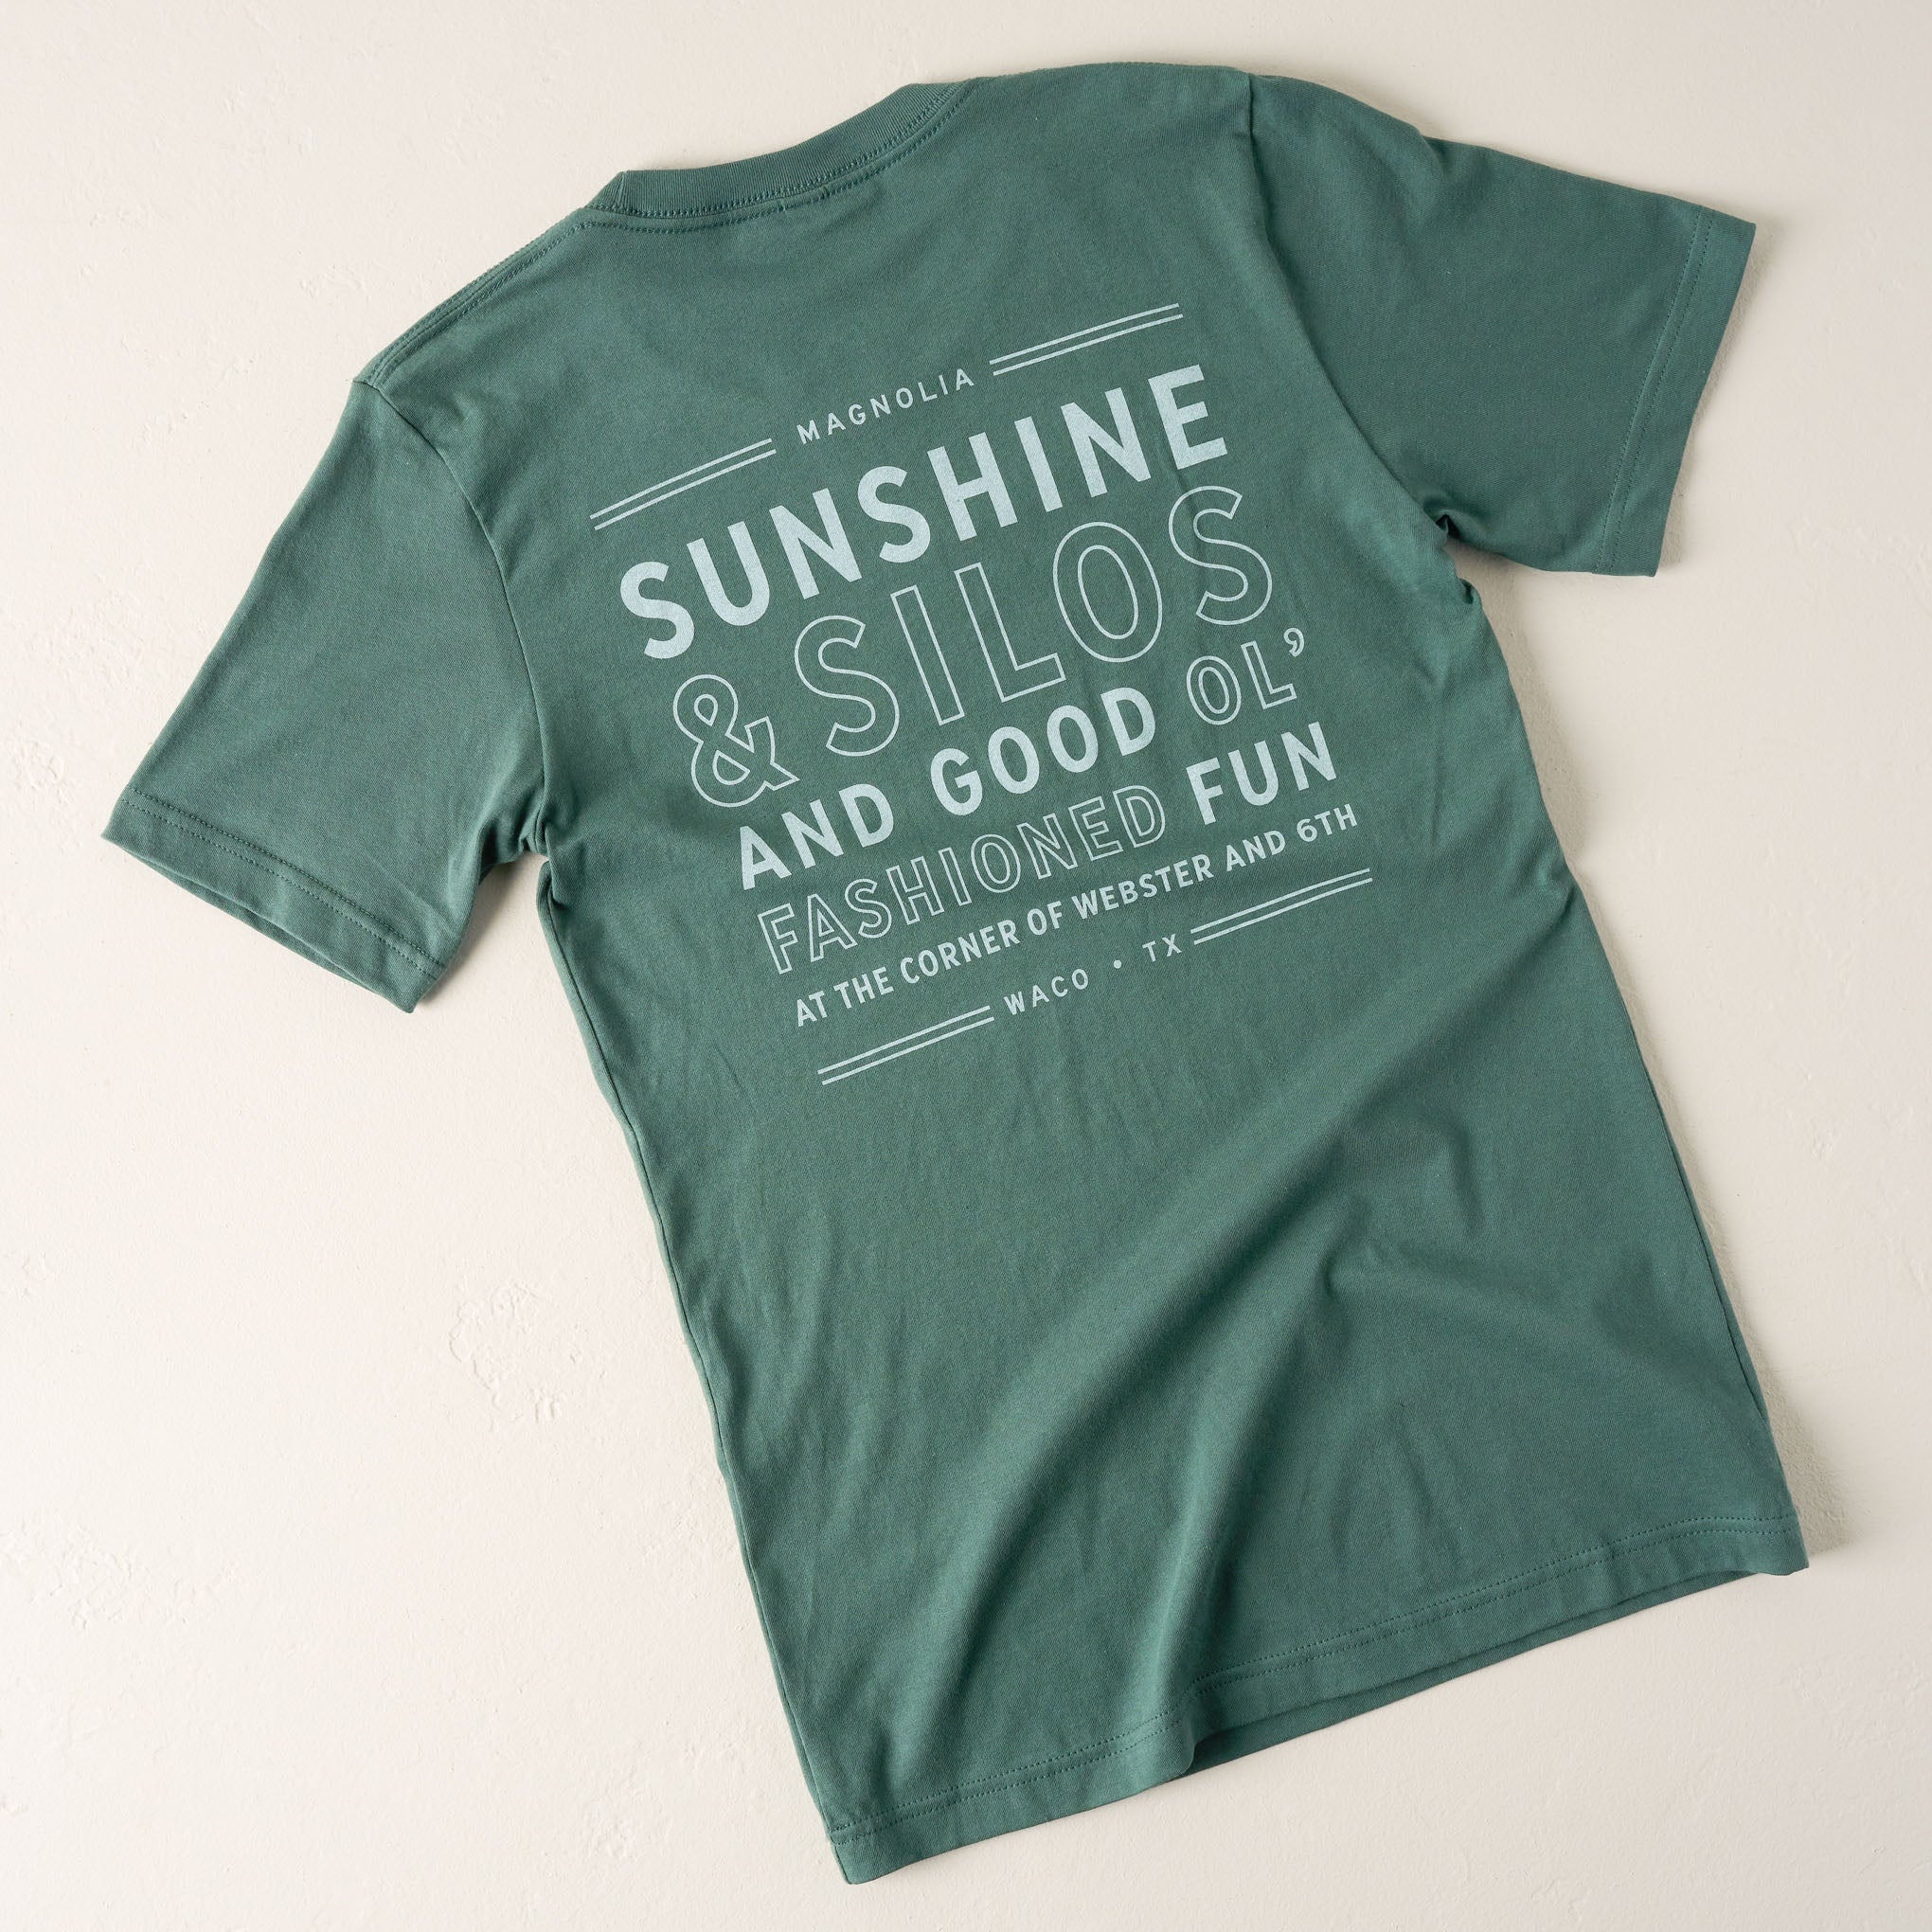 Sunshine Silos Fun Pine Shirt back of shirt $32.00